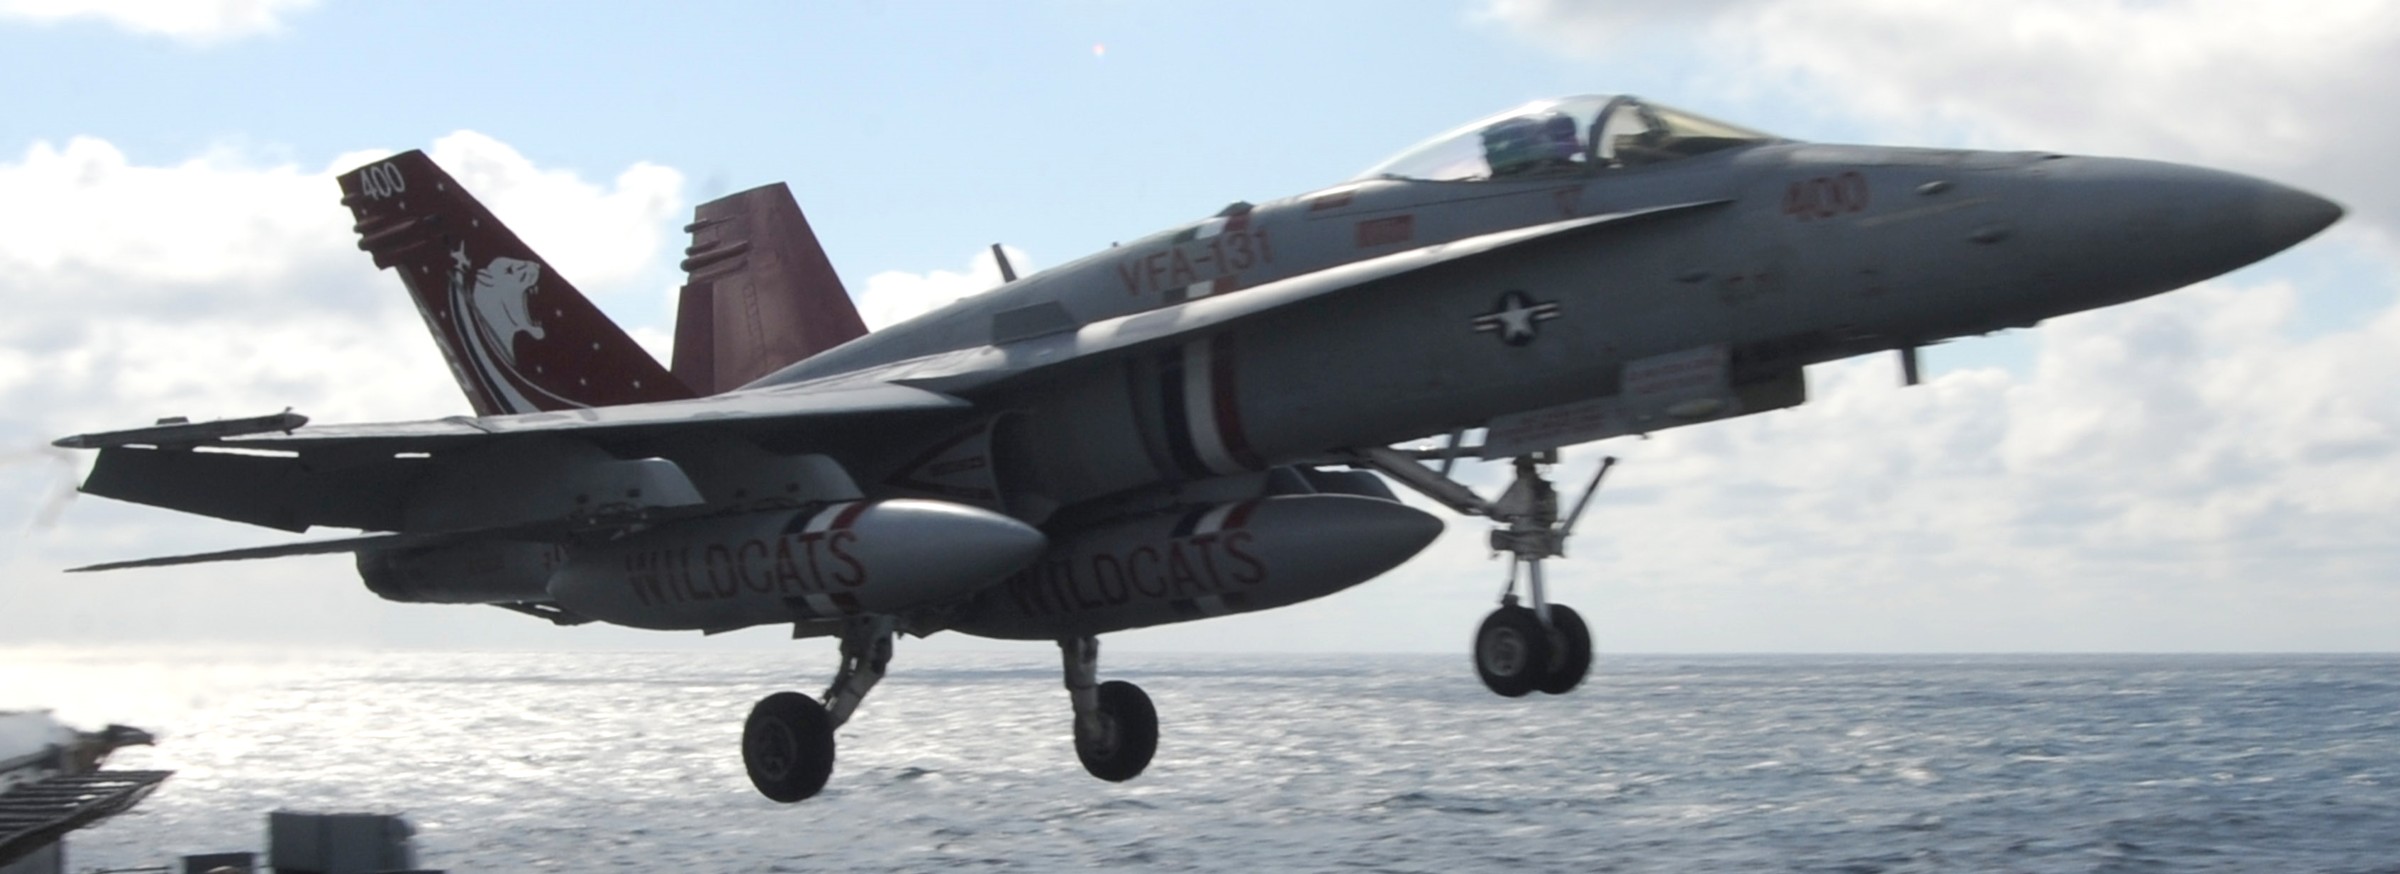 vfa-131 wildcats strike fighter squadron f/a-18c hornet cvw-7 uss dwight d. eisenhower cvn-69 2013 59